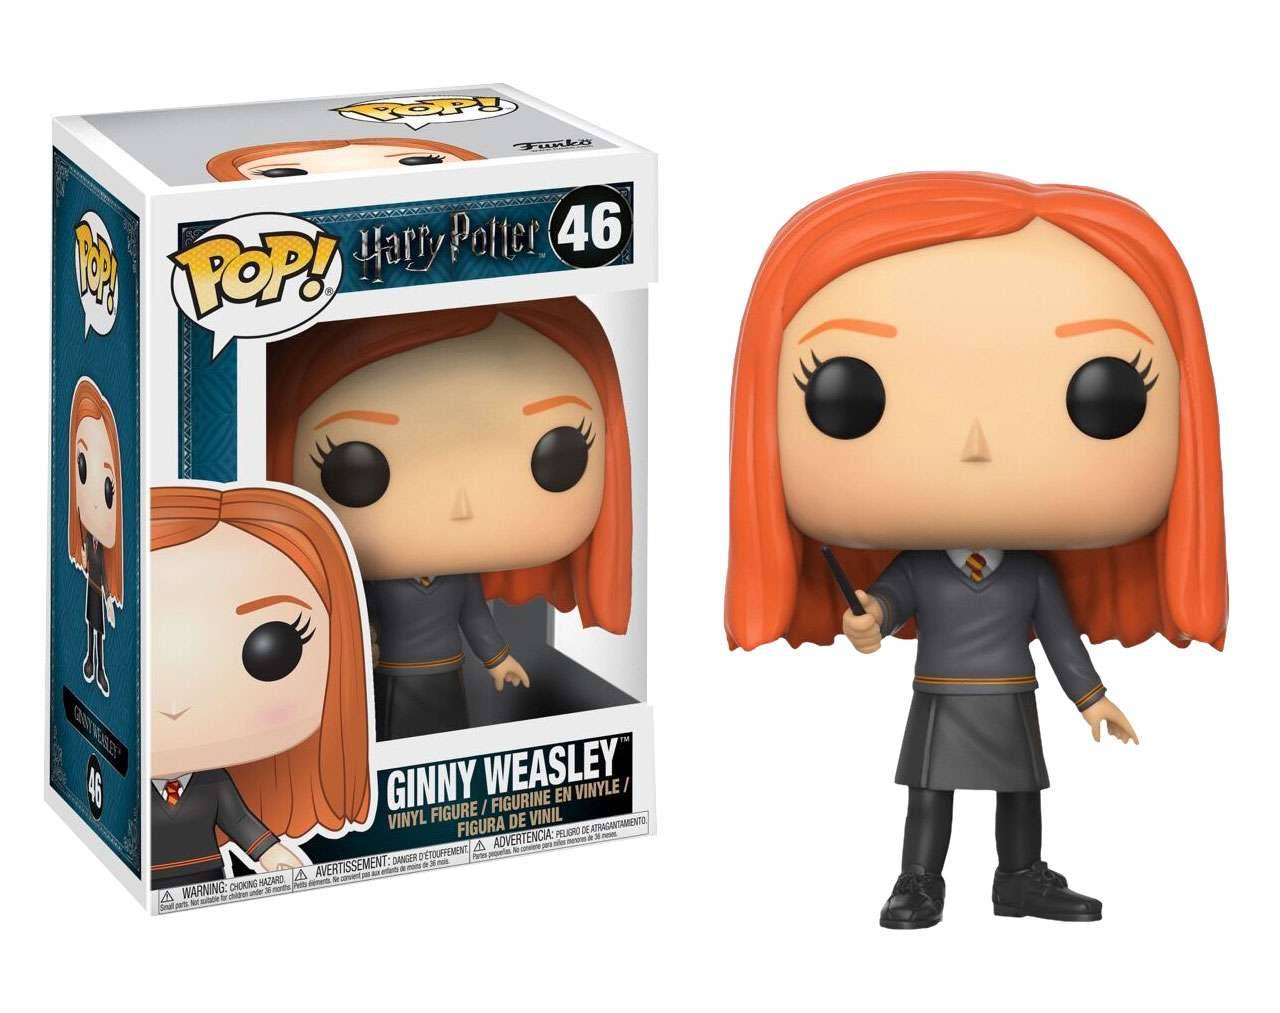 Ginny Weasley - Harry Potter  Pop! Vinyl